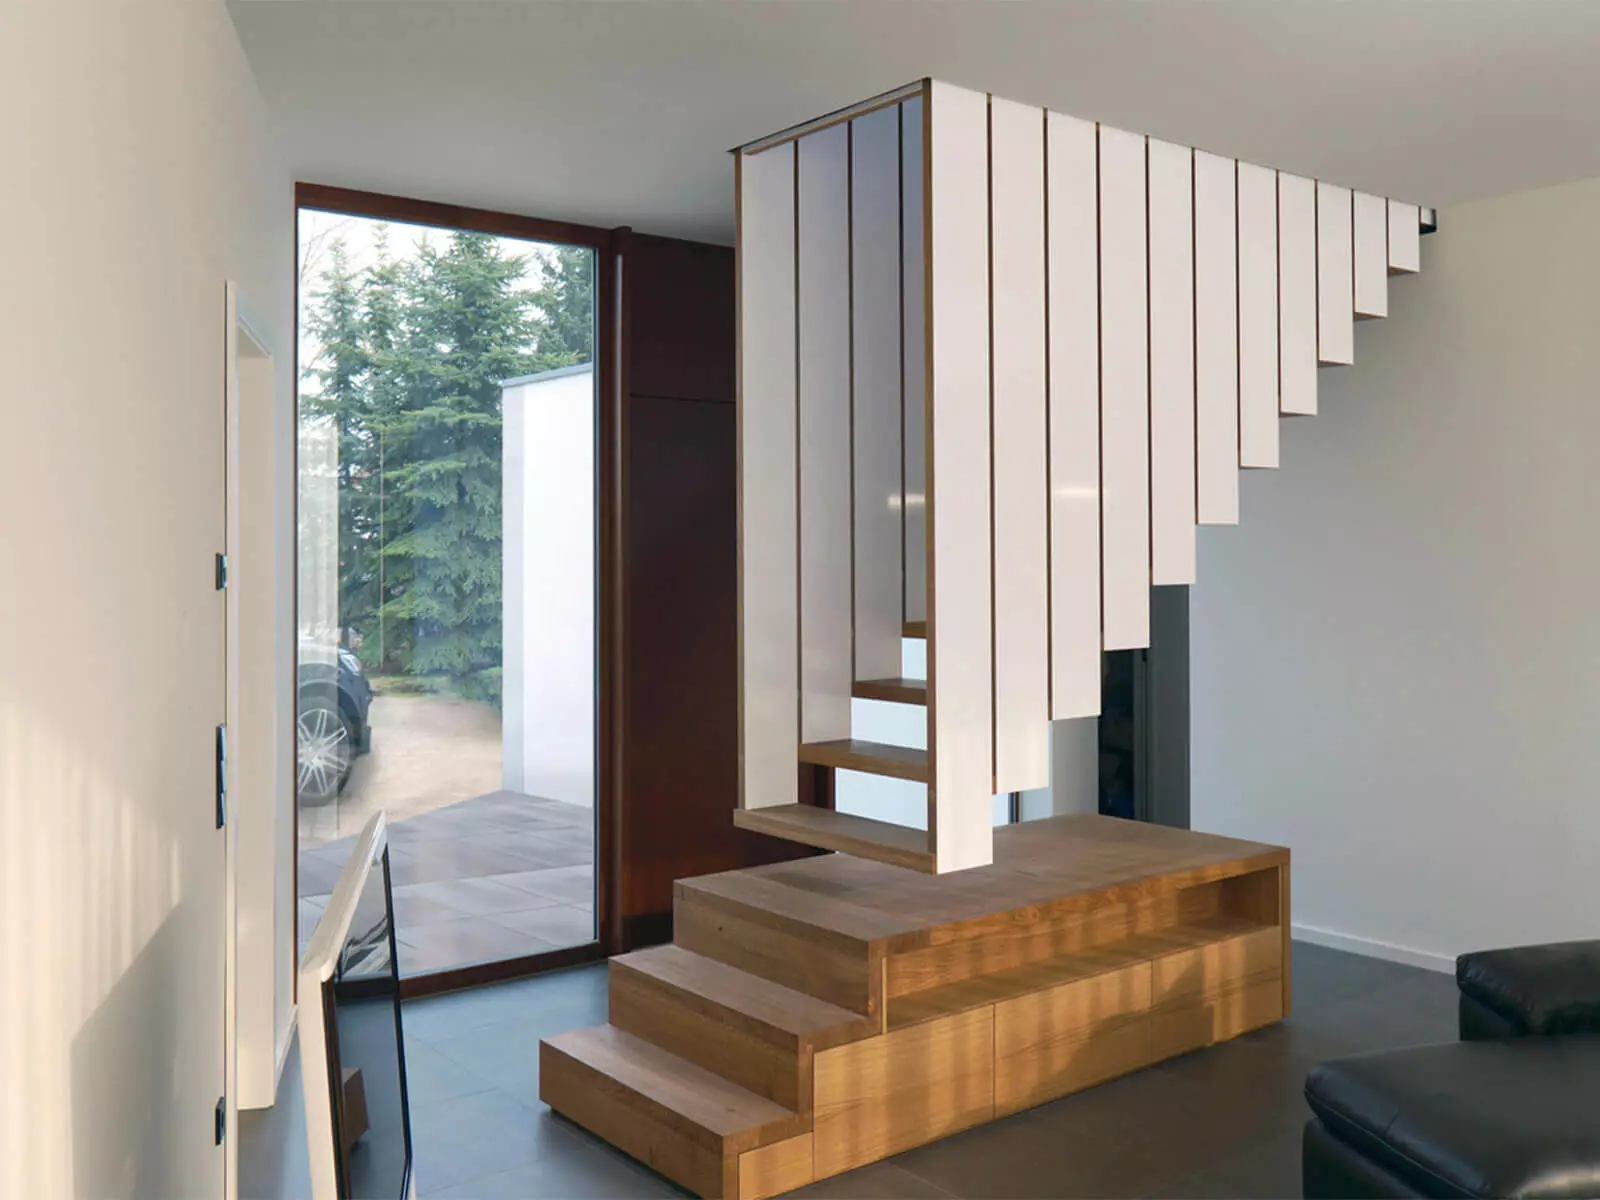 راه پله در طبقه دوم در یک خانه خصوصی: چه چیزی را انتخاب کنید؟